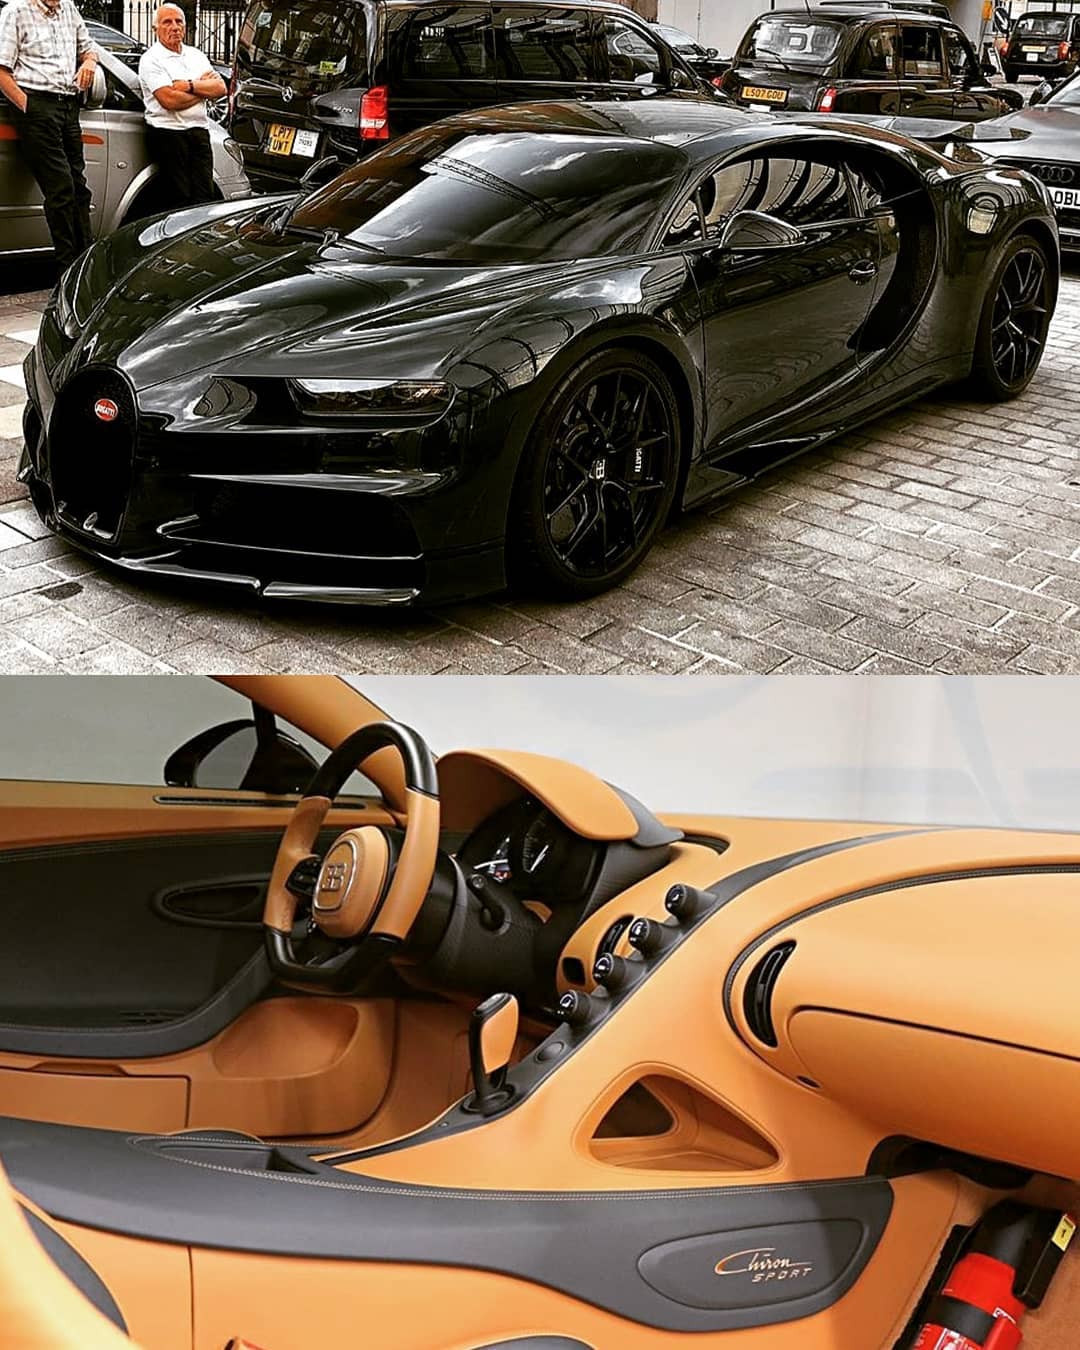 Chiron Sport #Bugatti #Chiron #BugattiChiron #Sport #Racing #Coupe #Luxury #Speed